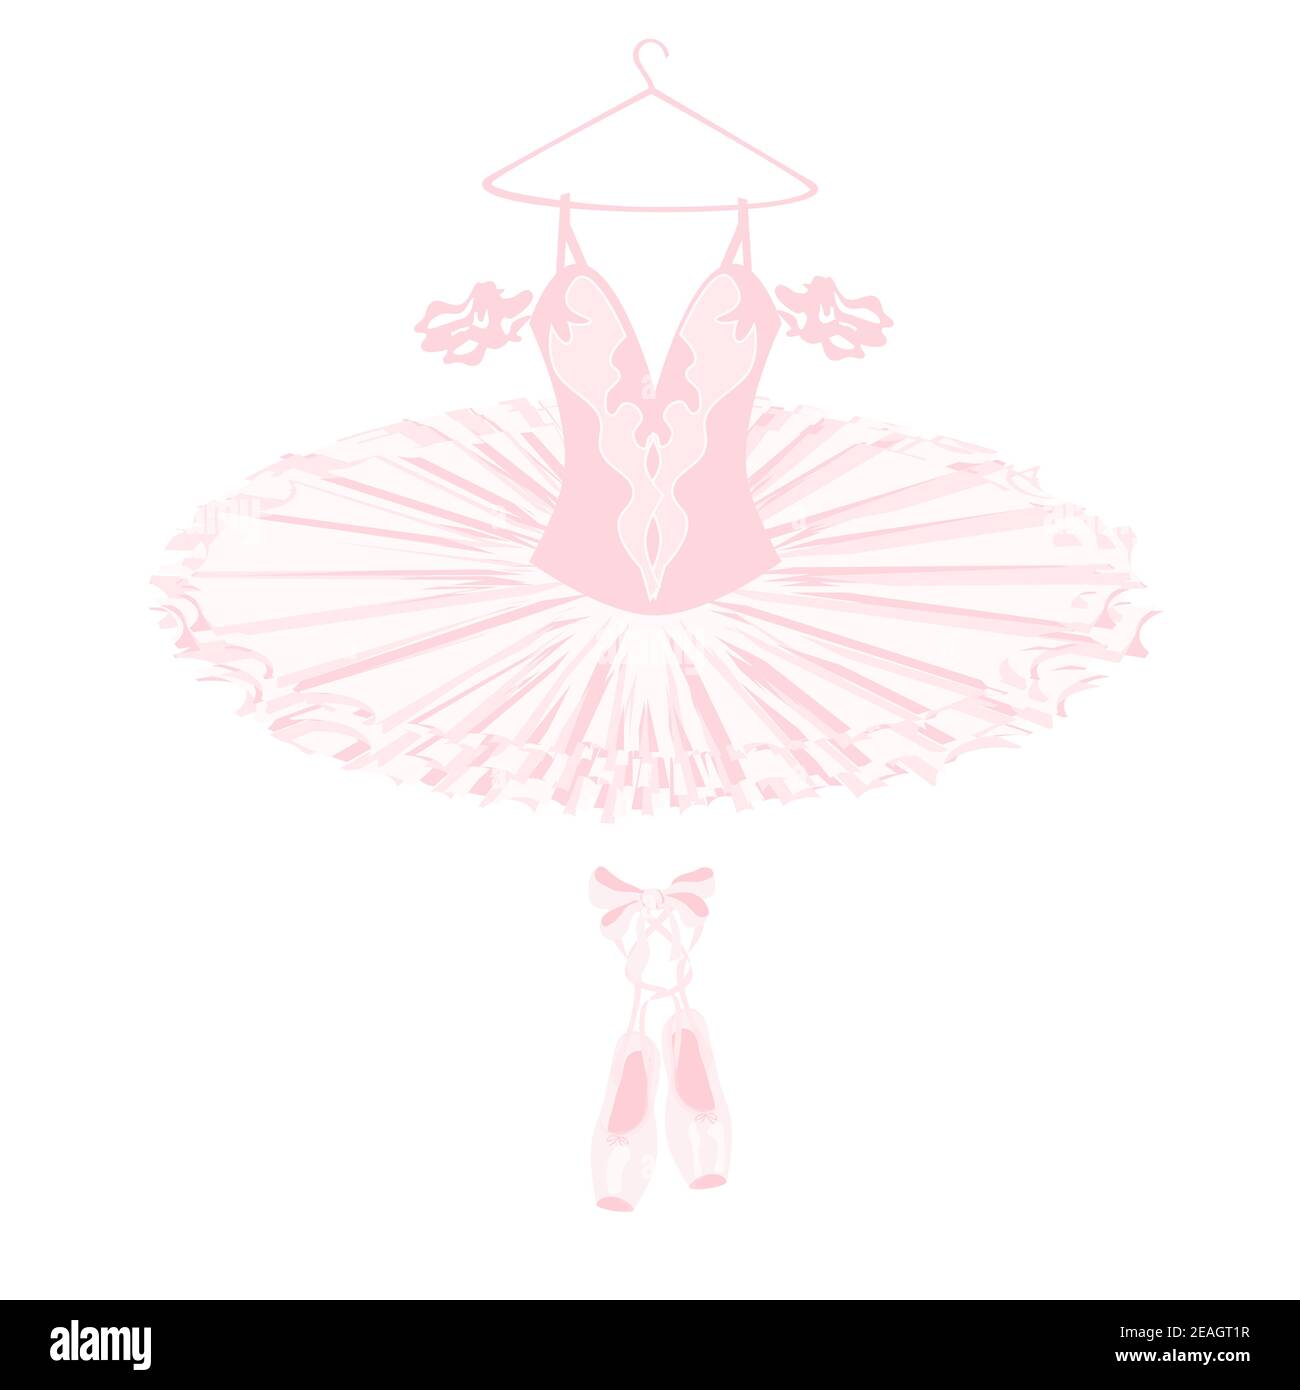 Ballerine tutu lacedress, scarpe da punta, abiti da ballo e da teatro, balletto vettoriale Illustrazione Vettoriale